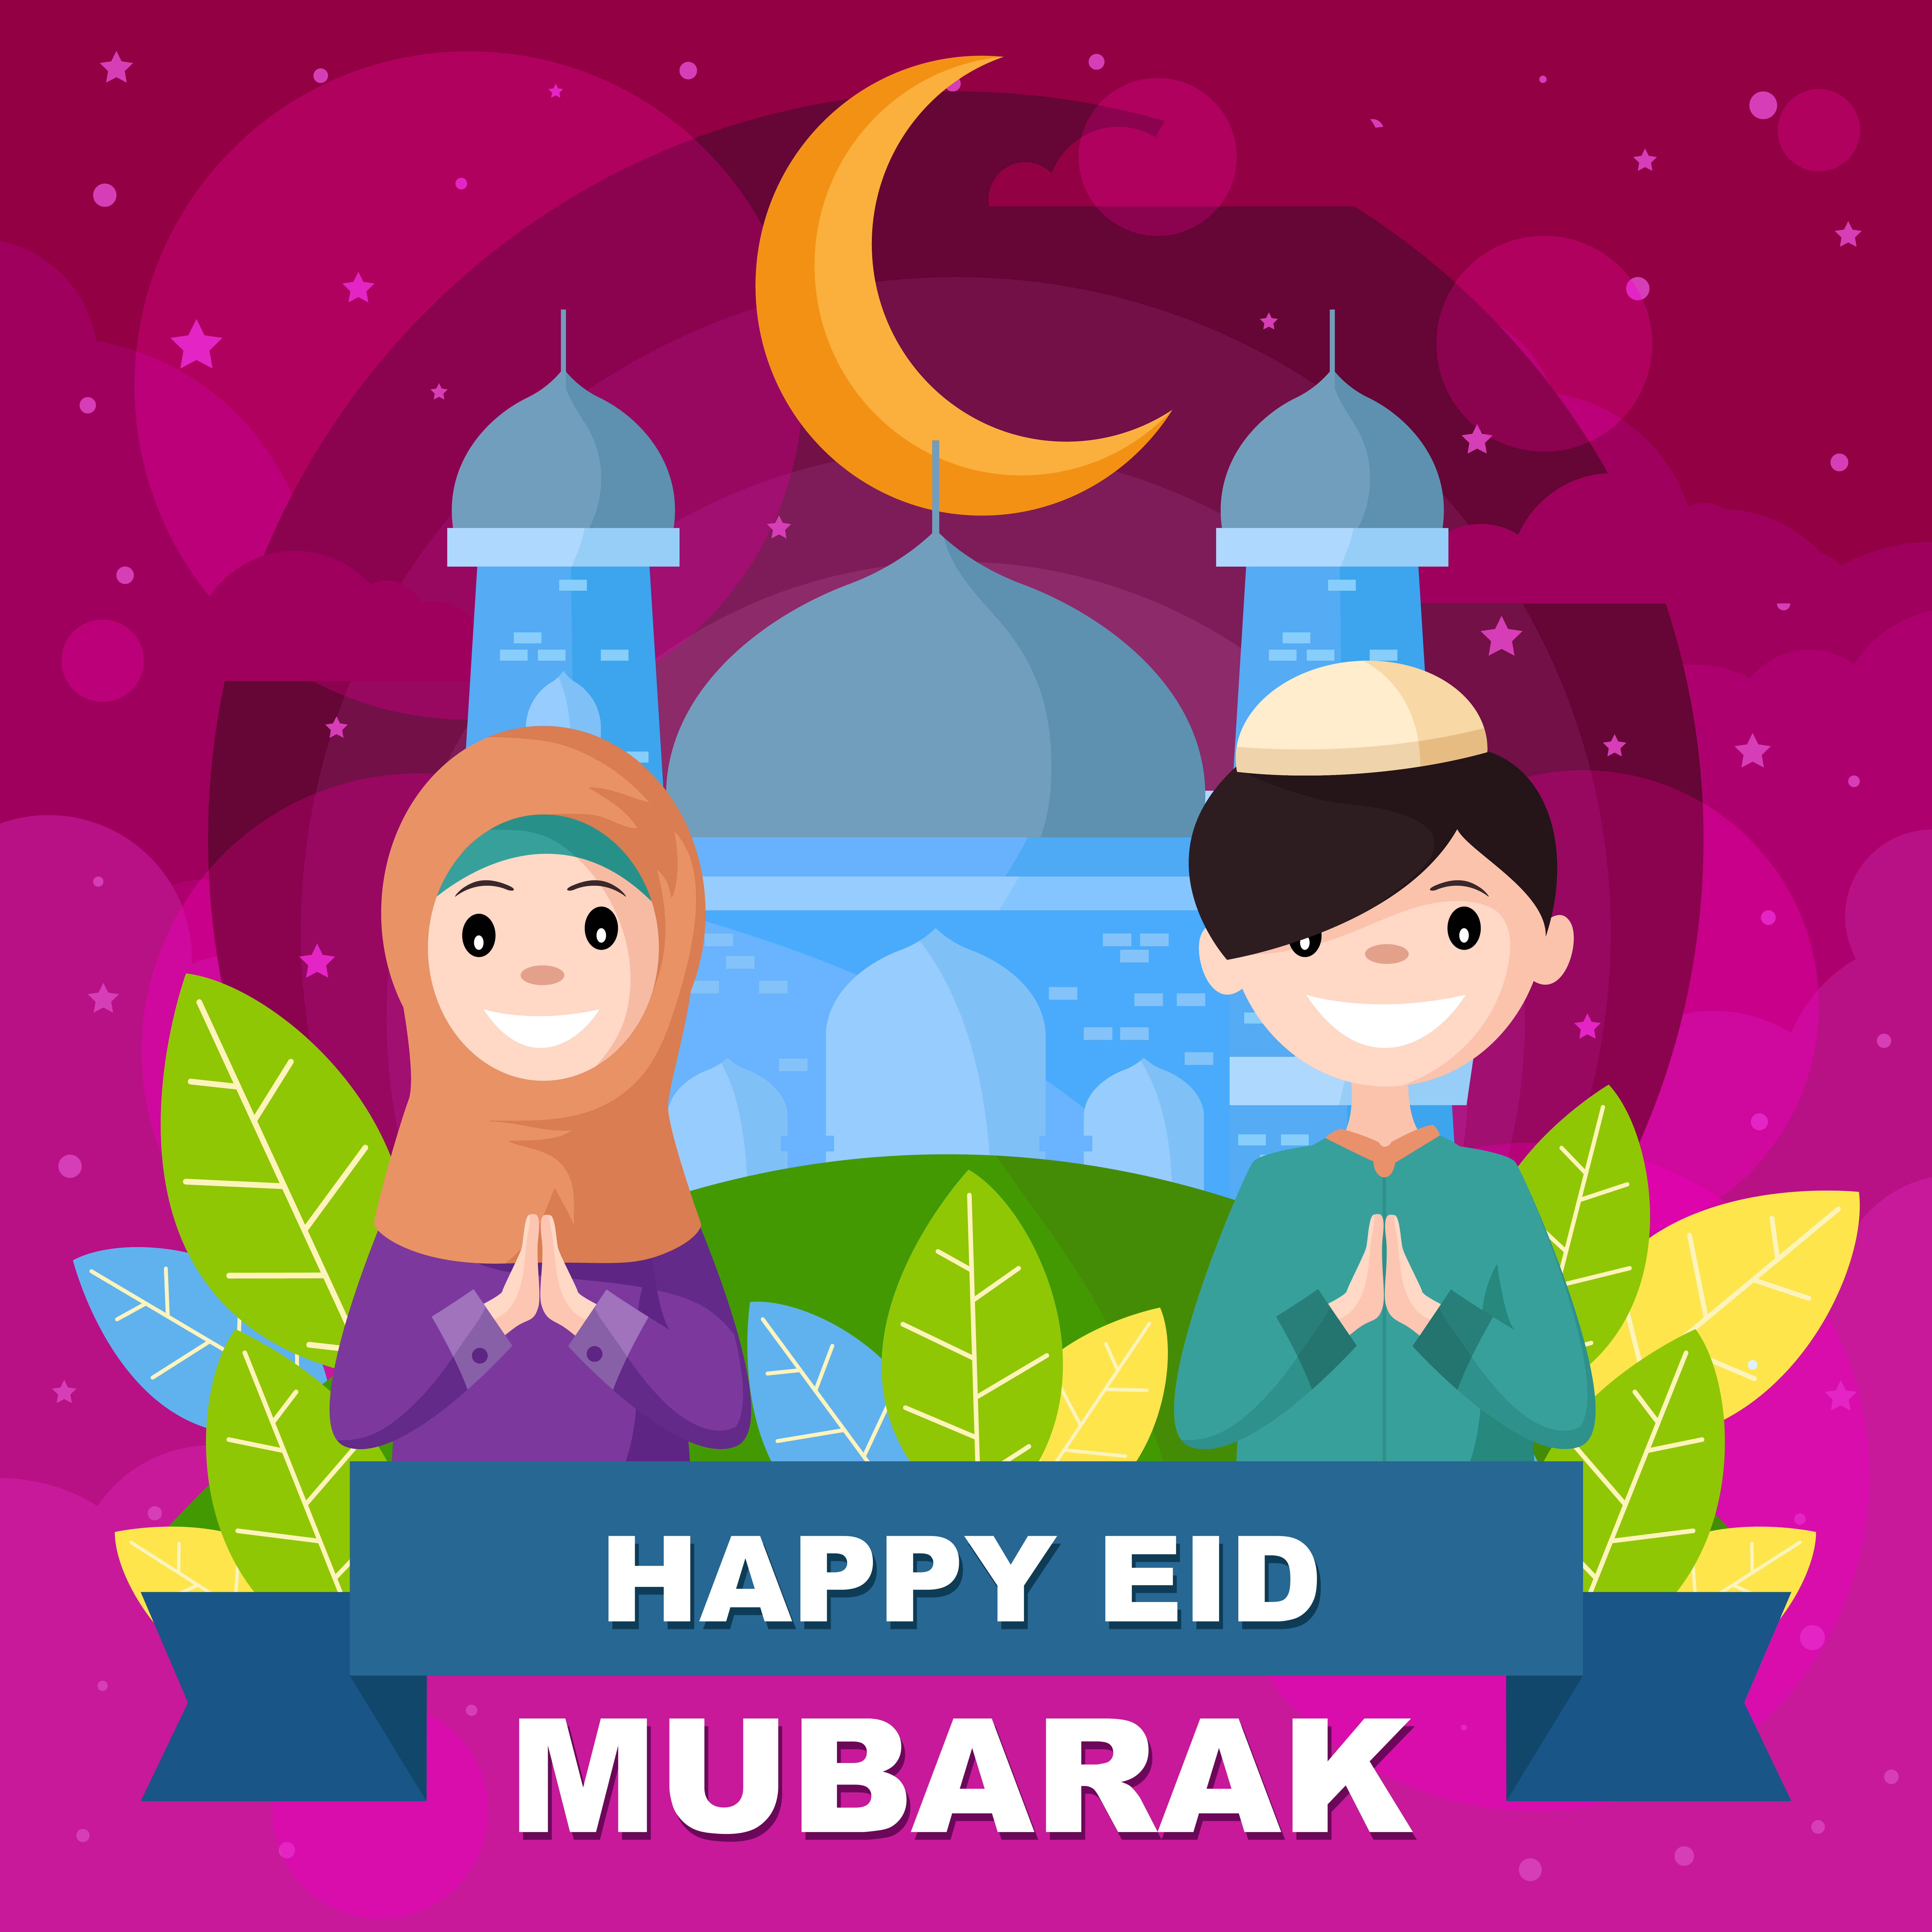 Happy Eid Mubarak With Two Children 2207723 Vector Art At Vecteezy